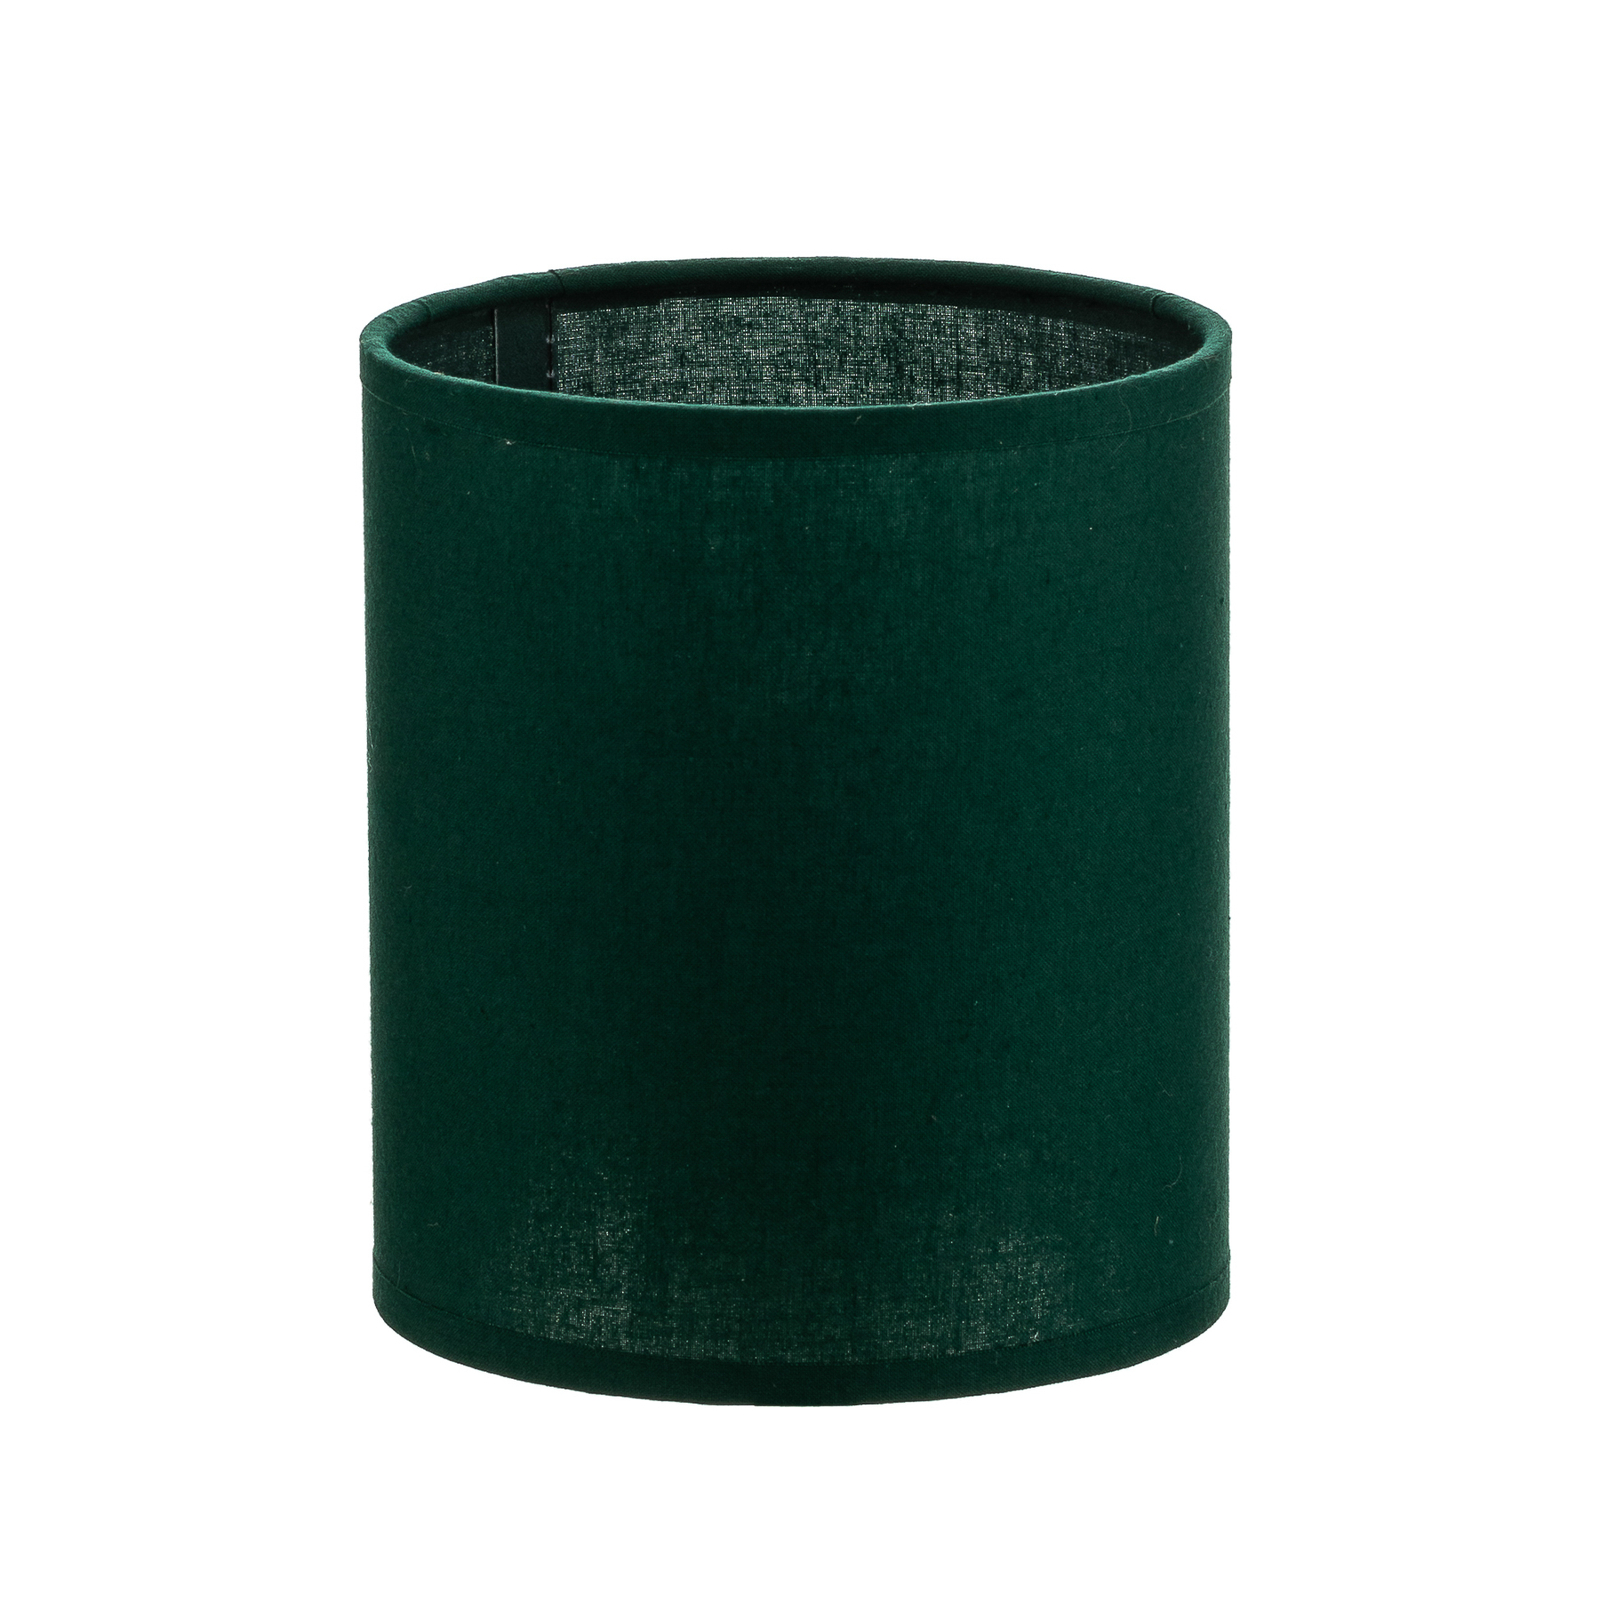 Lampskärm Roller, grön, Ø 13 cm, höjd 15 cm